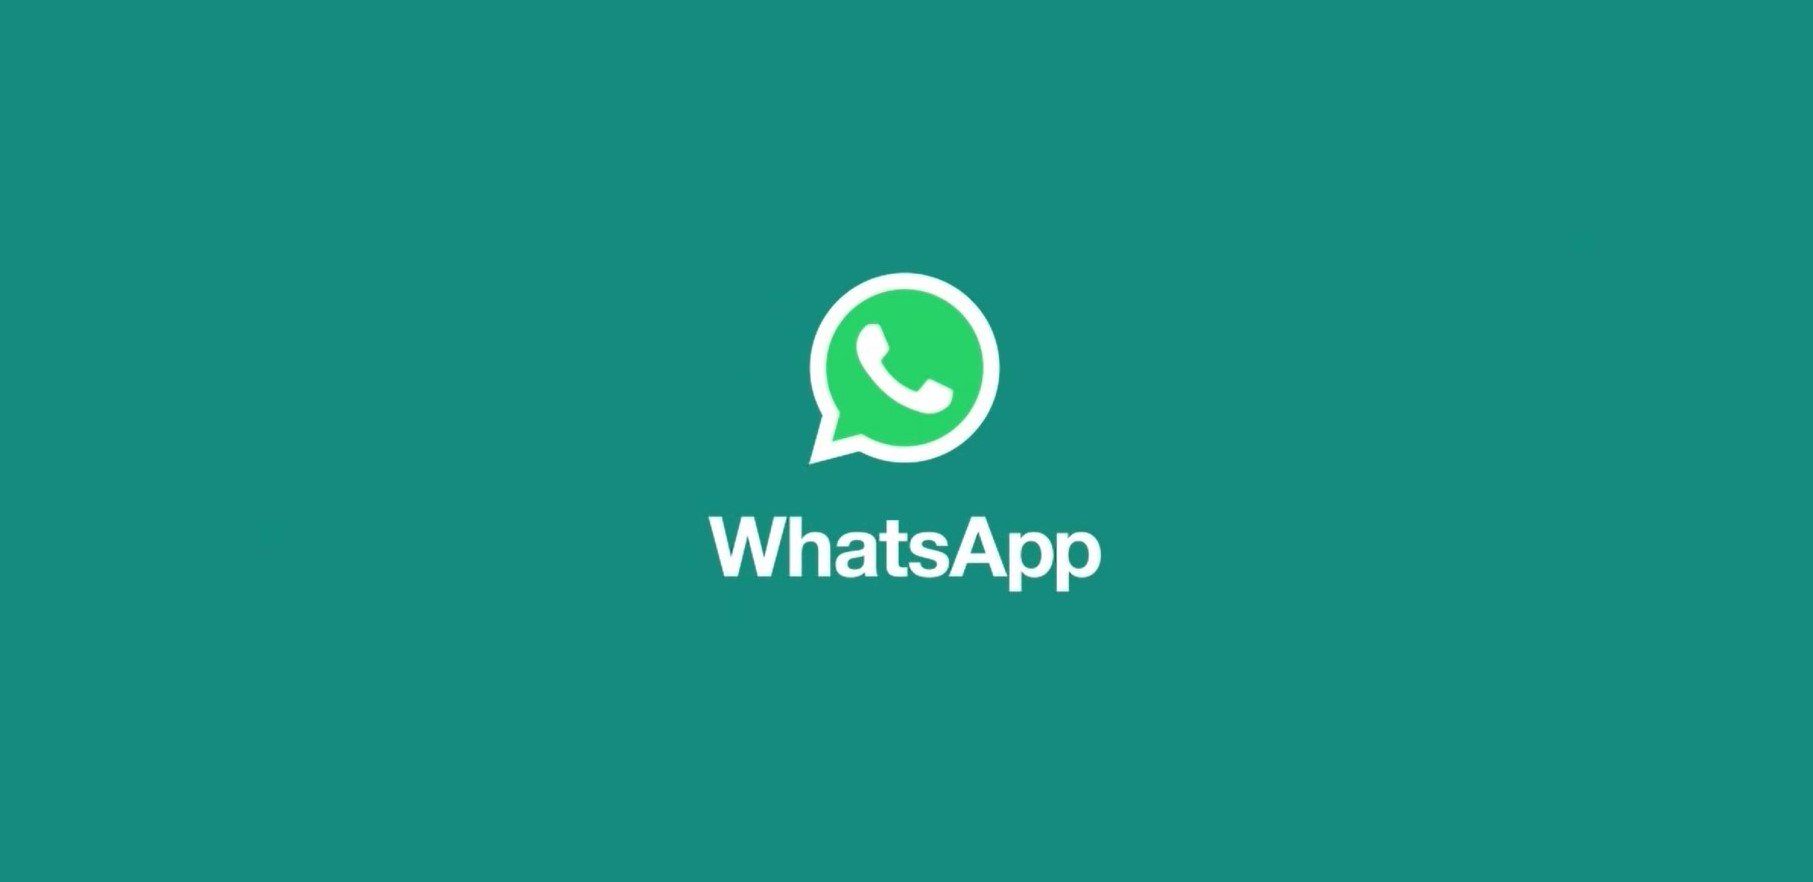 Es bleibt immer weniger Zeit, Änderungen in WhatsApp zu akzeptieren. Bleibst du oder suchst du etwas anderes? 156